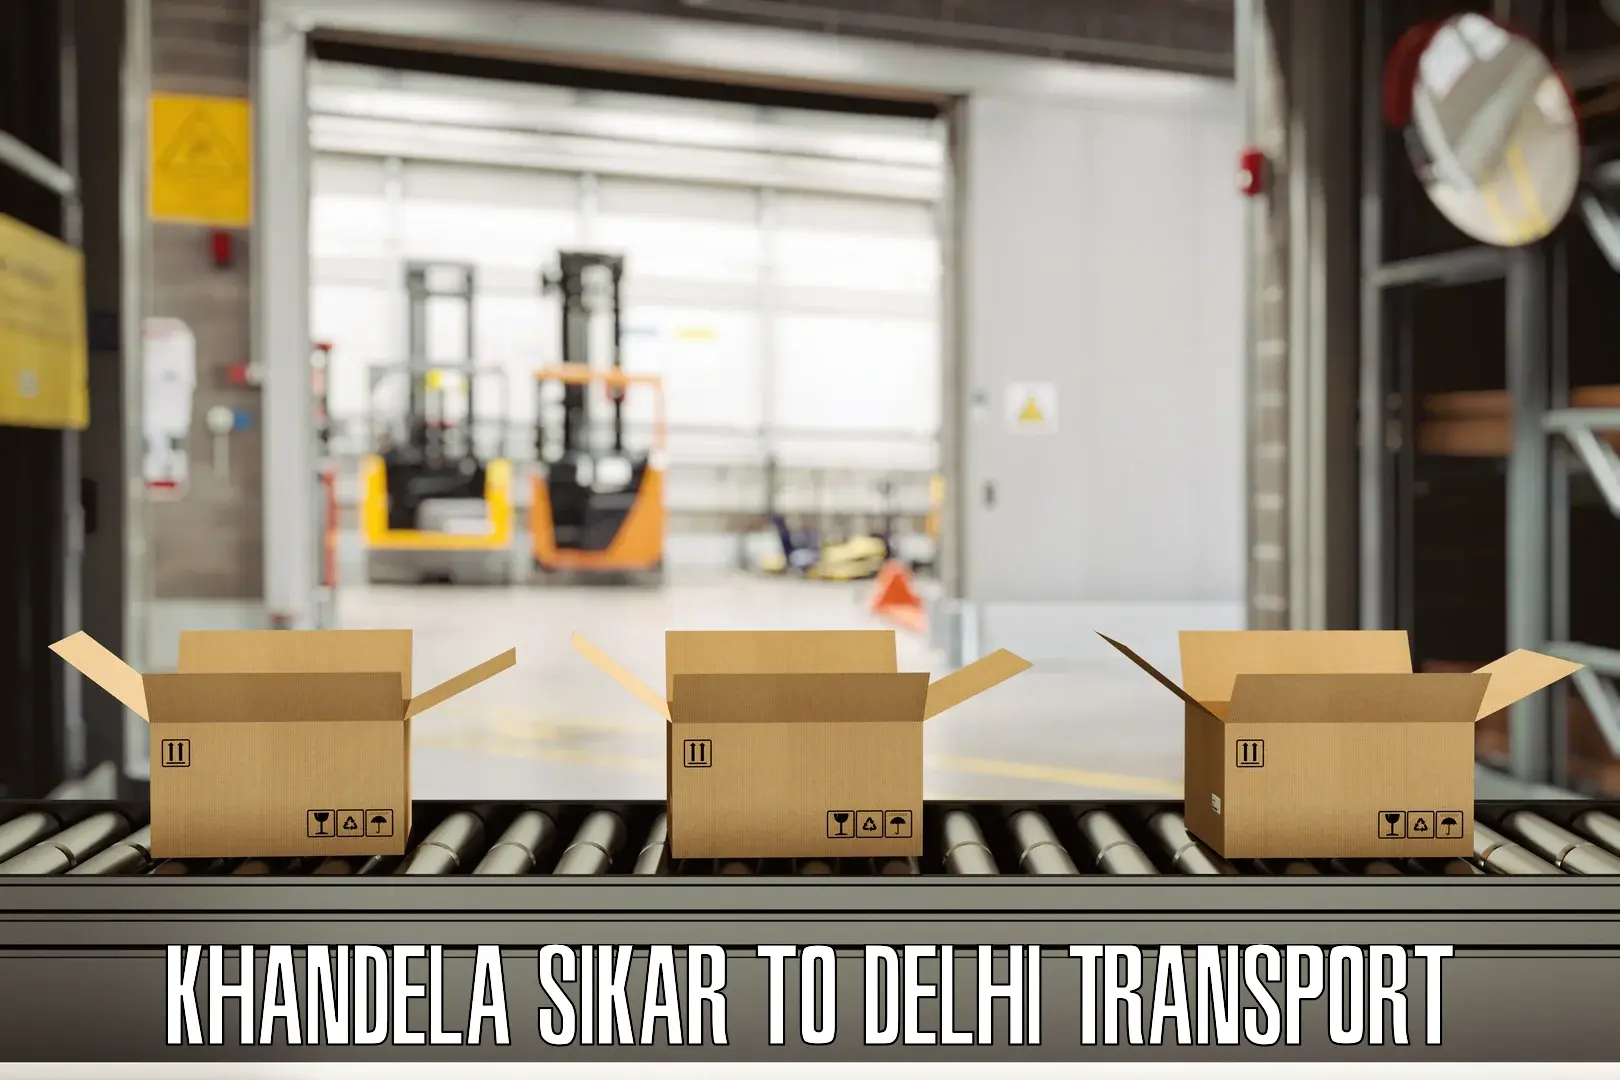 Shipping partner Khandela Sikar to Delhi